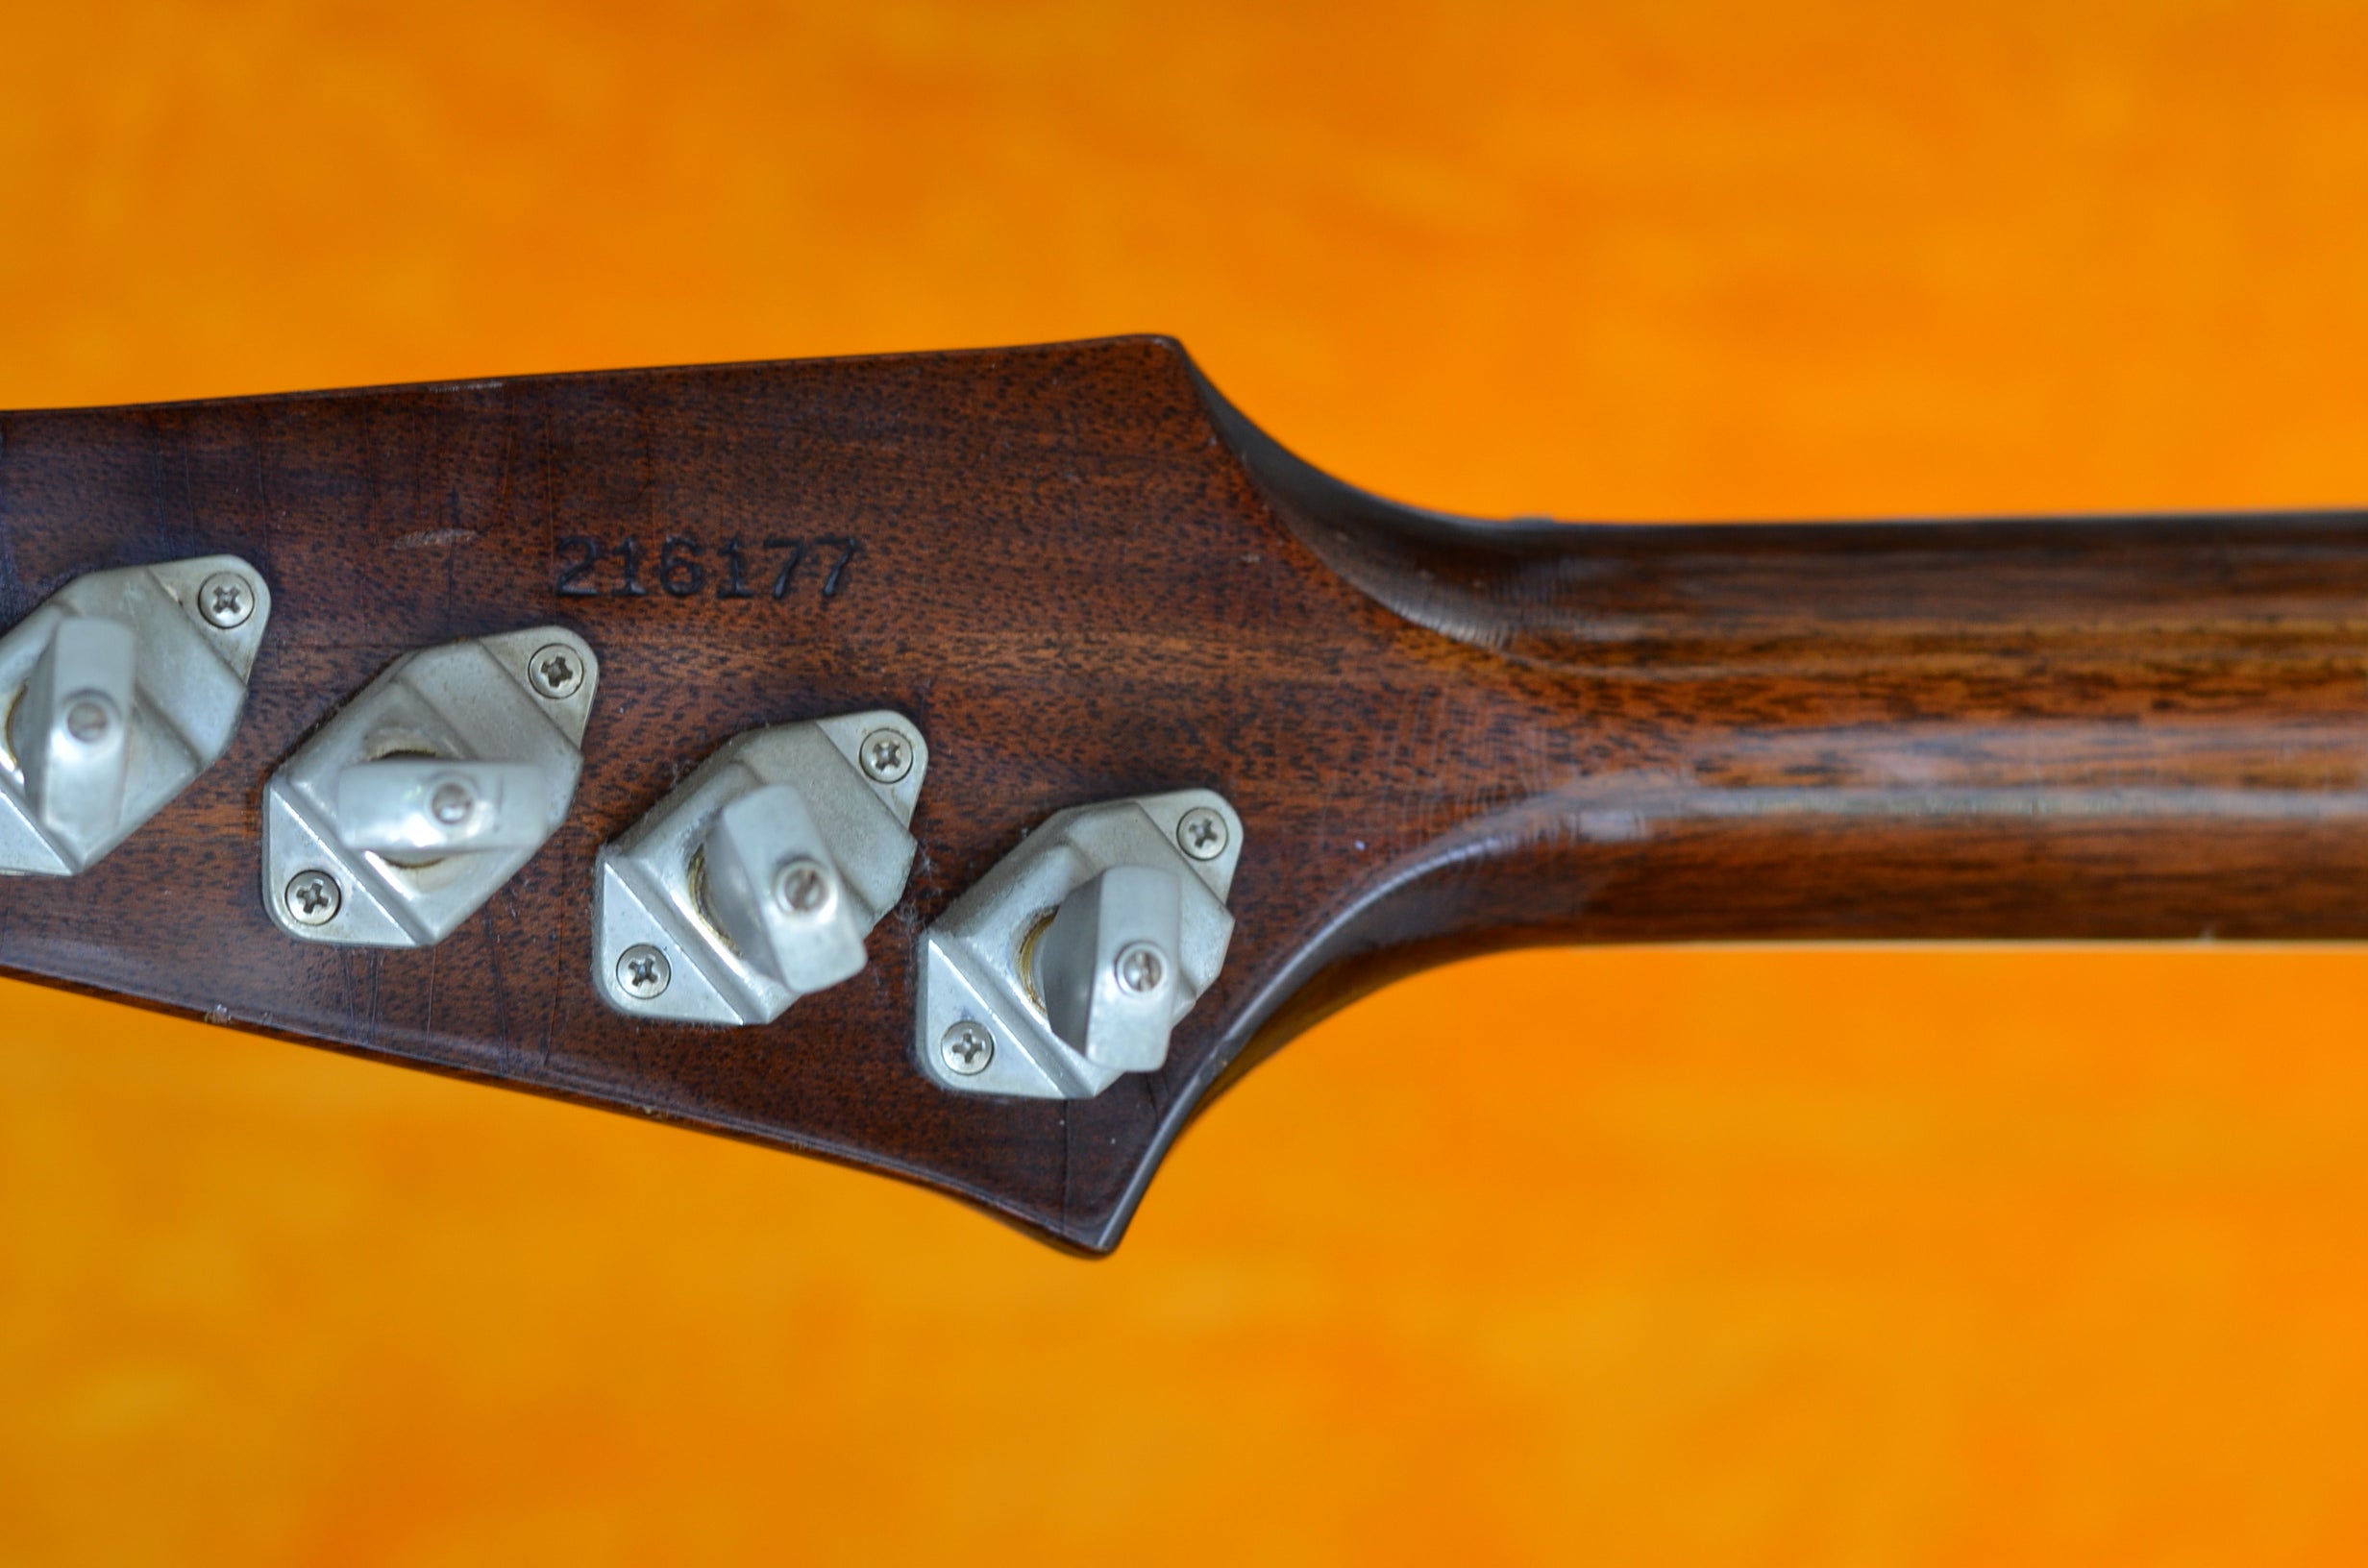 Gibson Firebird 1960s serial number